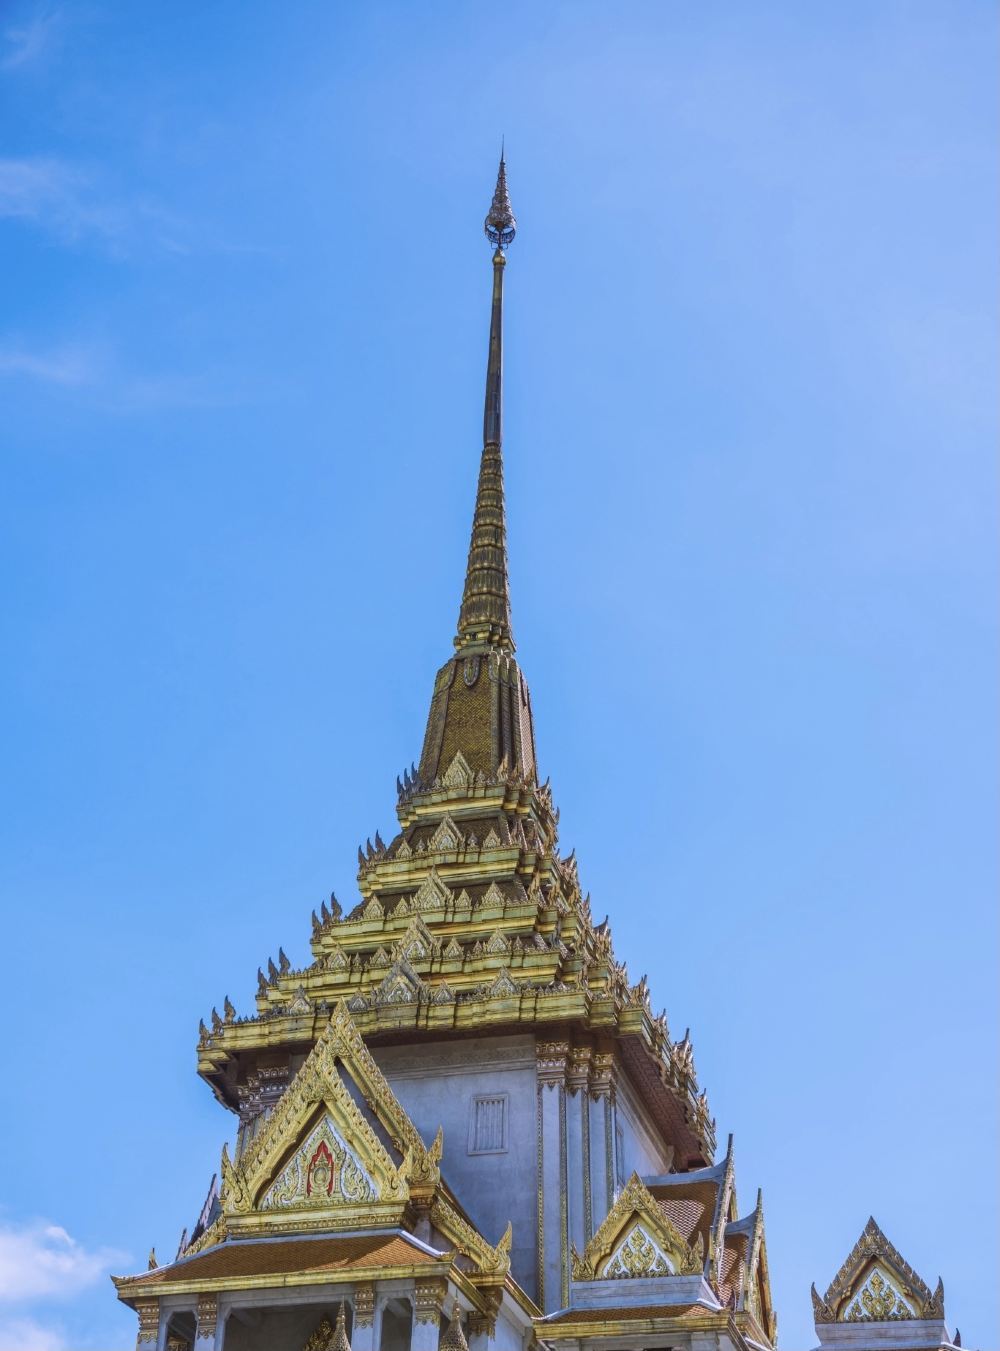 曼谷旅游景点金佛寺高清打卡图片 金佛寺景点真实风景照片